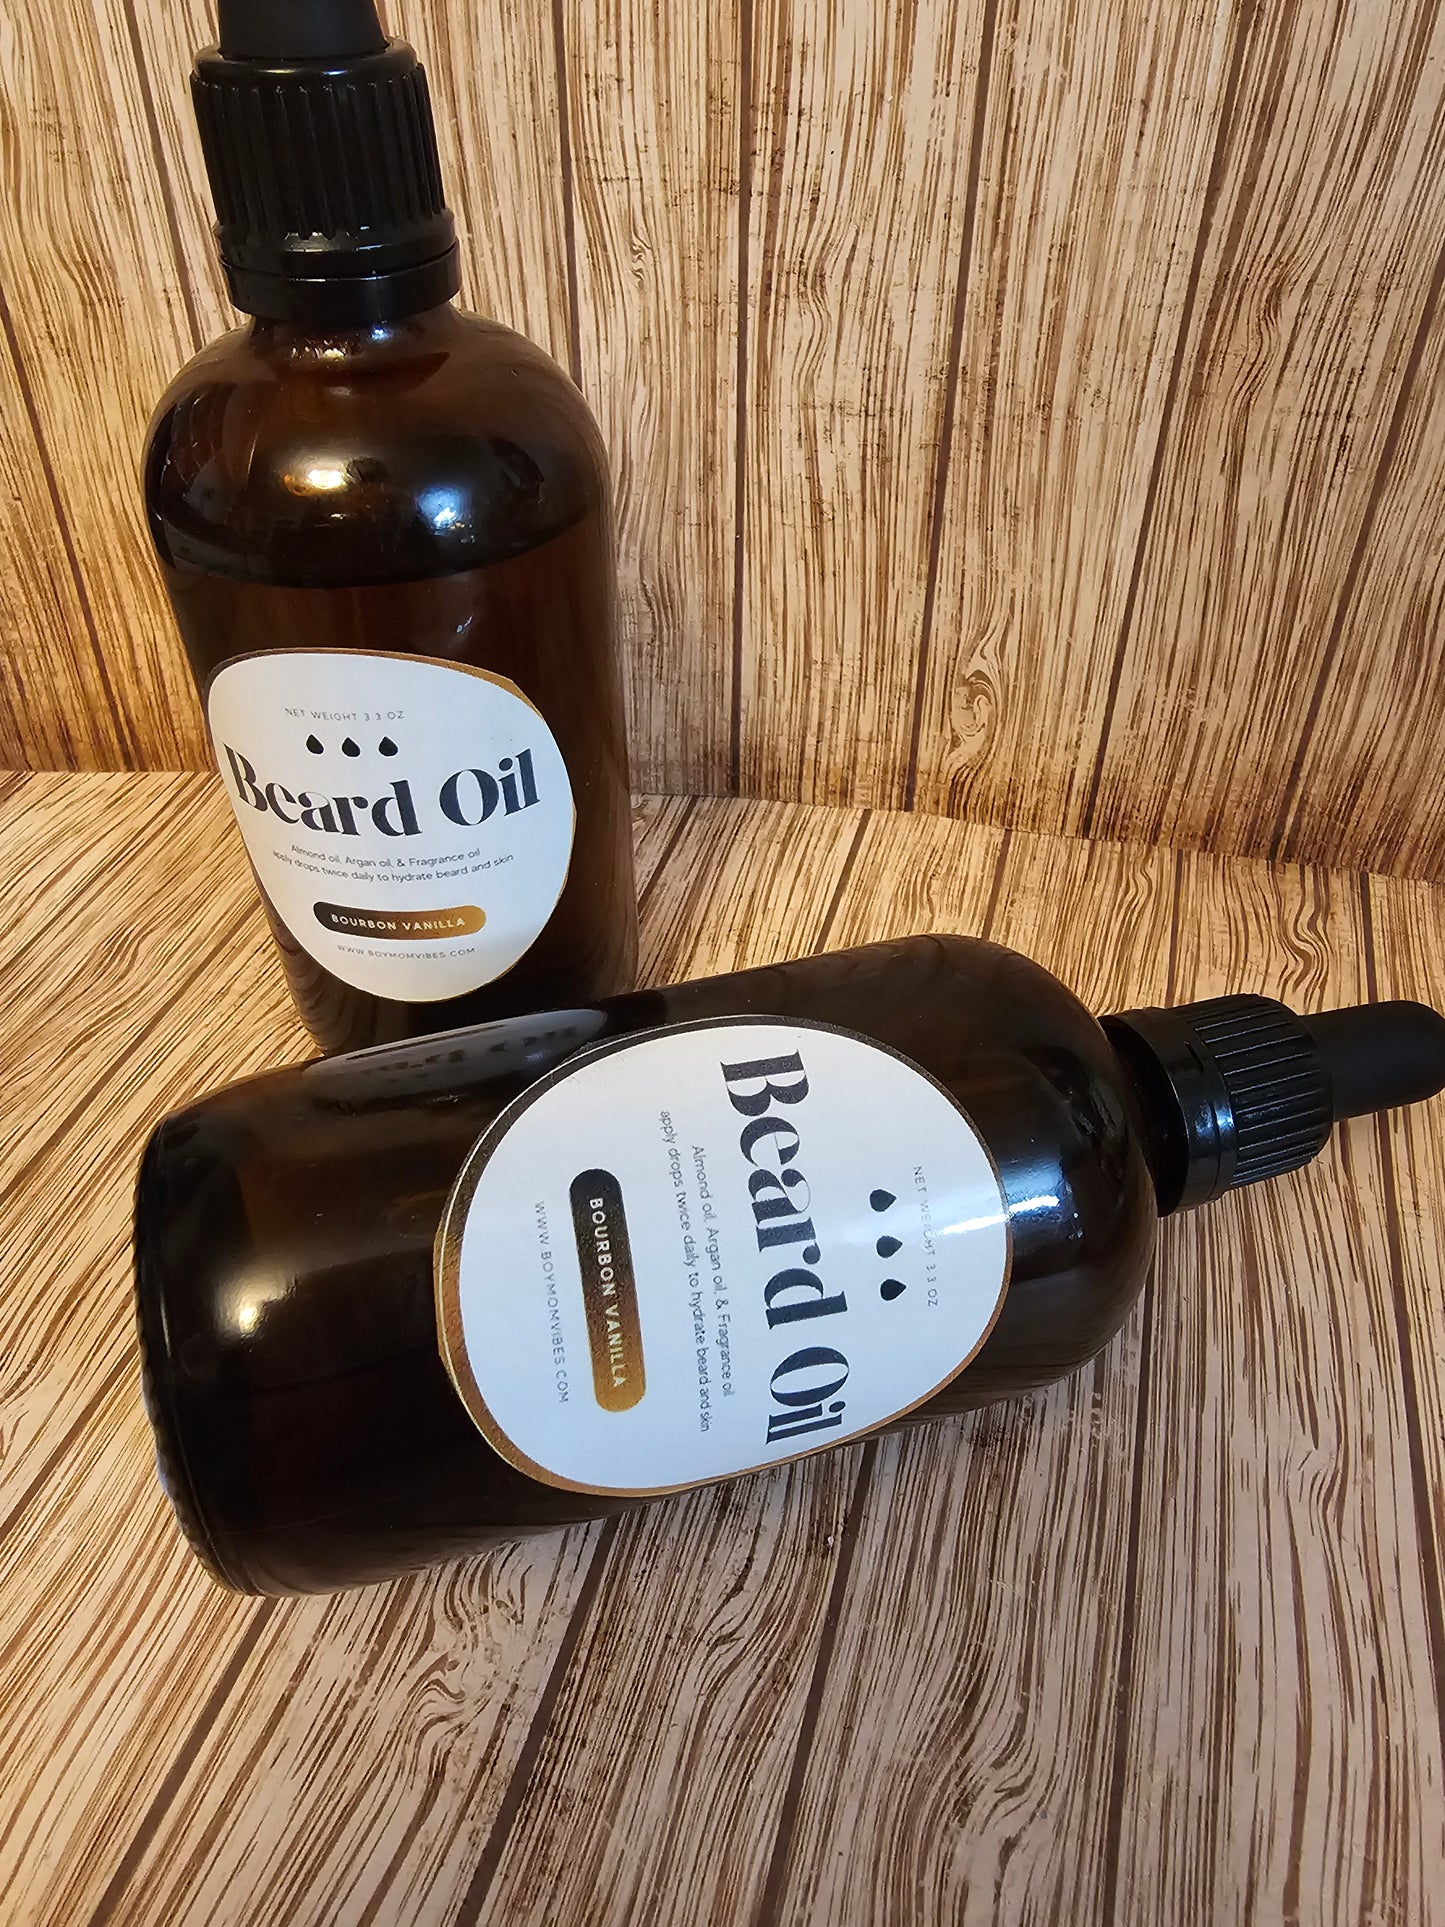 Beard Oil 3.3 oz